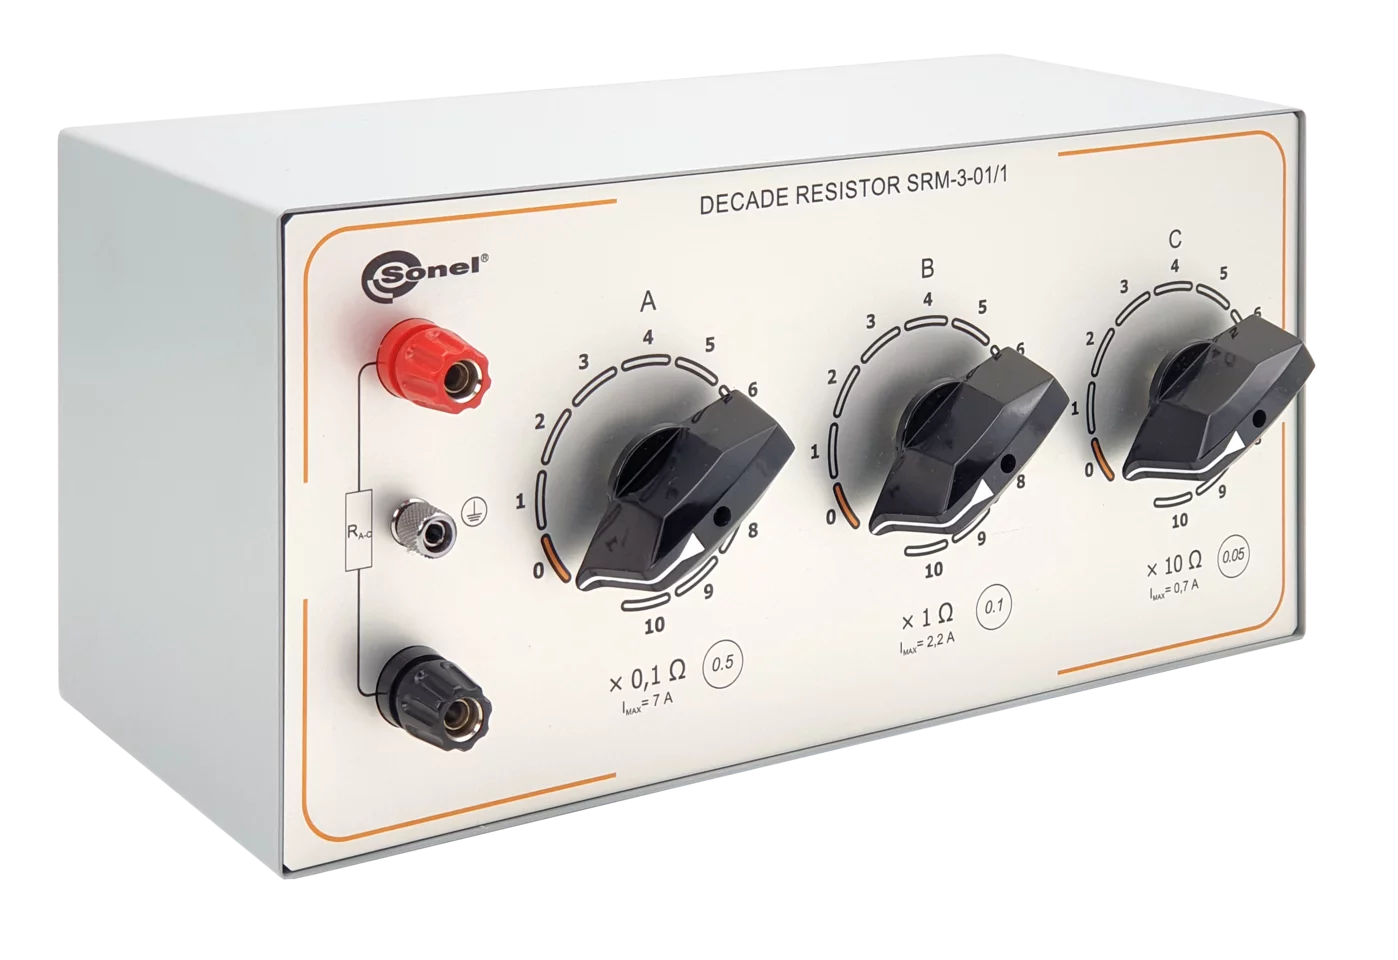 Manual decade resistor SRM-3-01/1-1